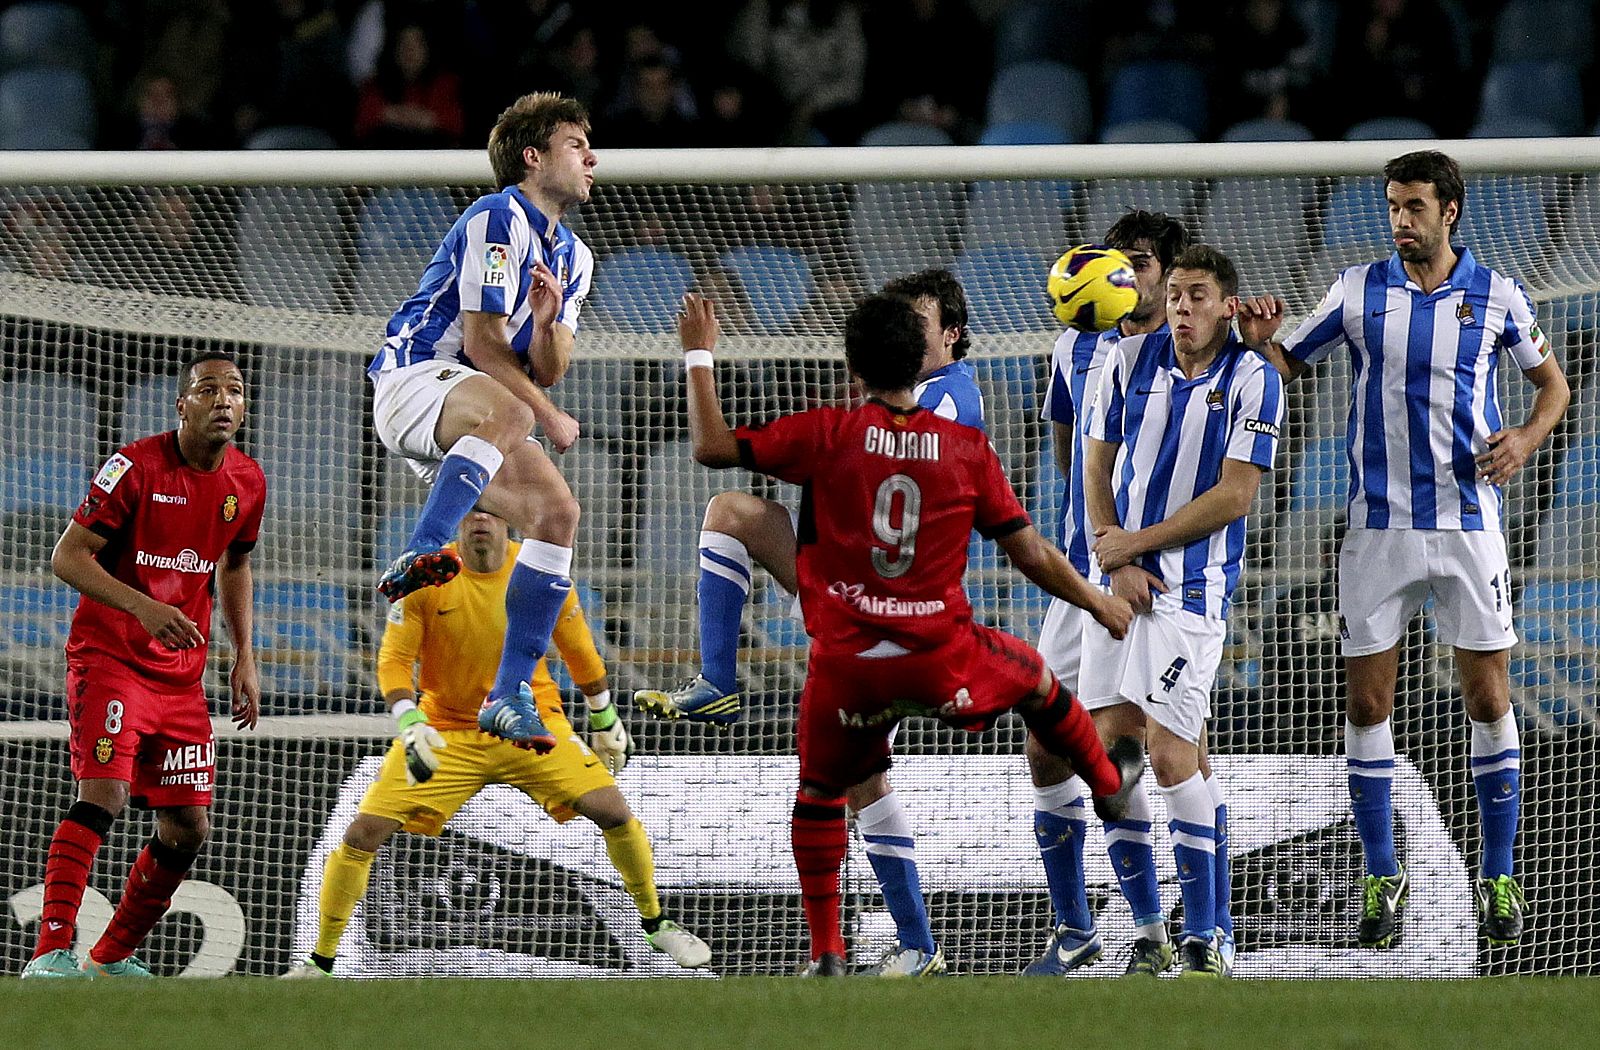 La barrera de la Real Sociedad repele un lanzamiento de falta del delantero mexicano del Mallorca Giovani Dos Santos Giovani (c).